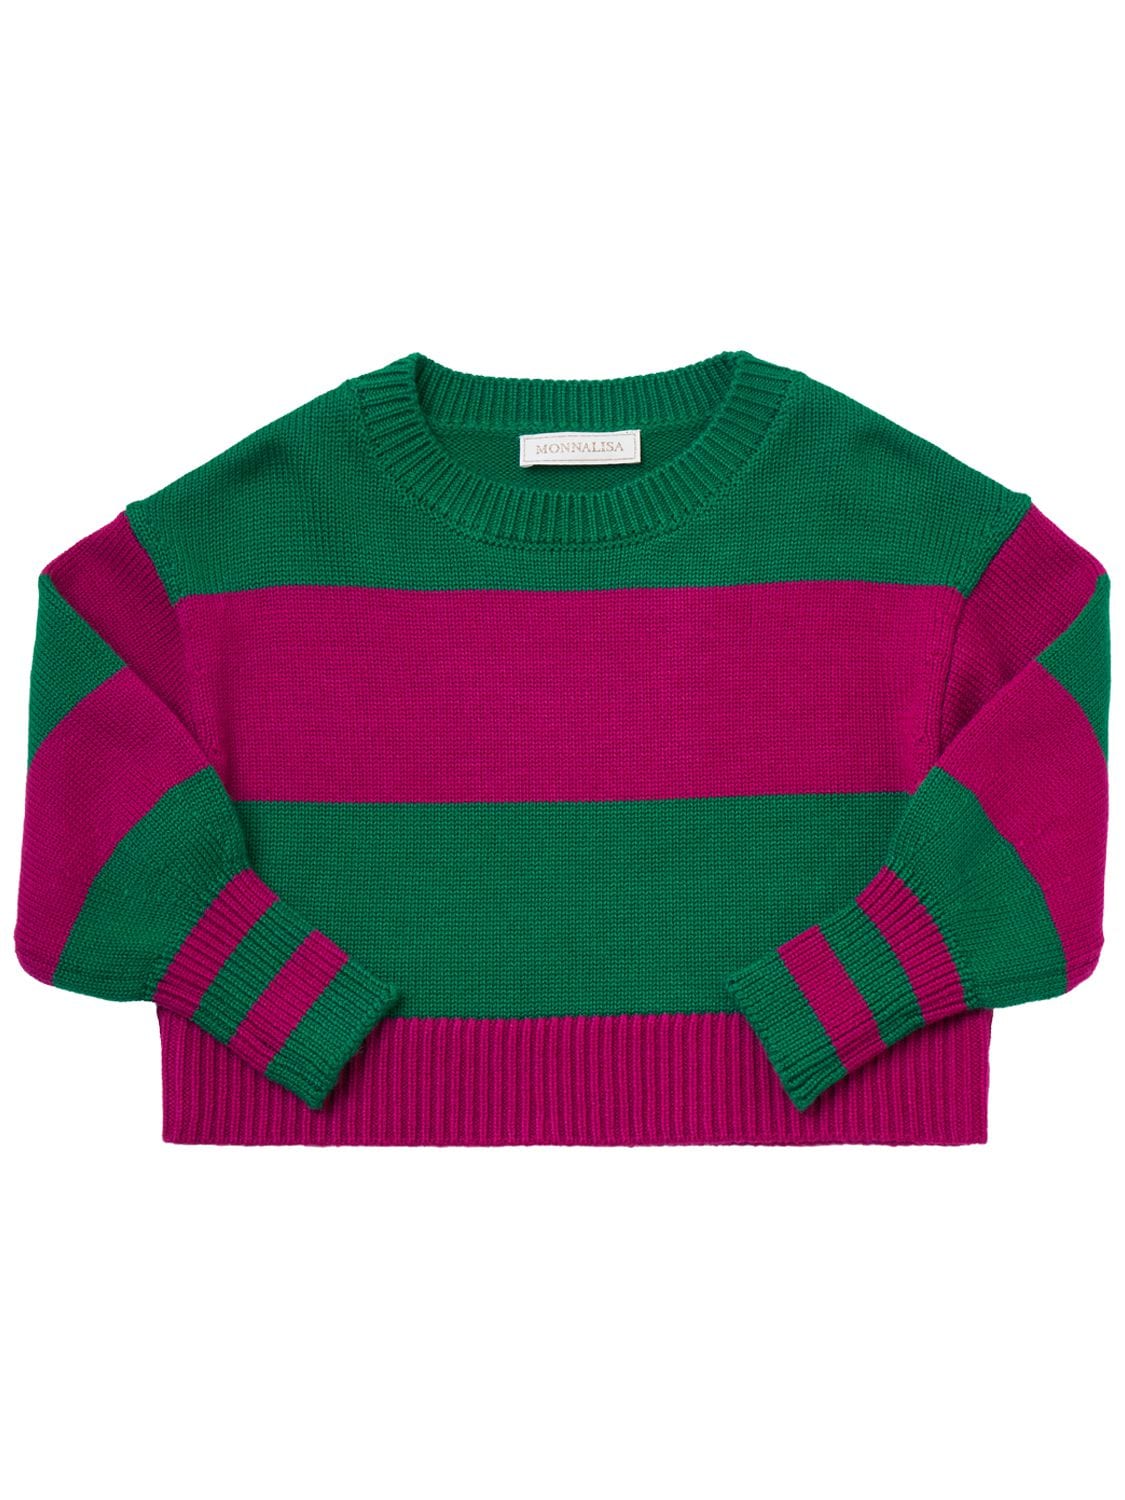 Monnalisa Kids' Striped Wool Blend Knit Jumper In Green,fuchsia